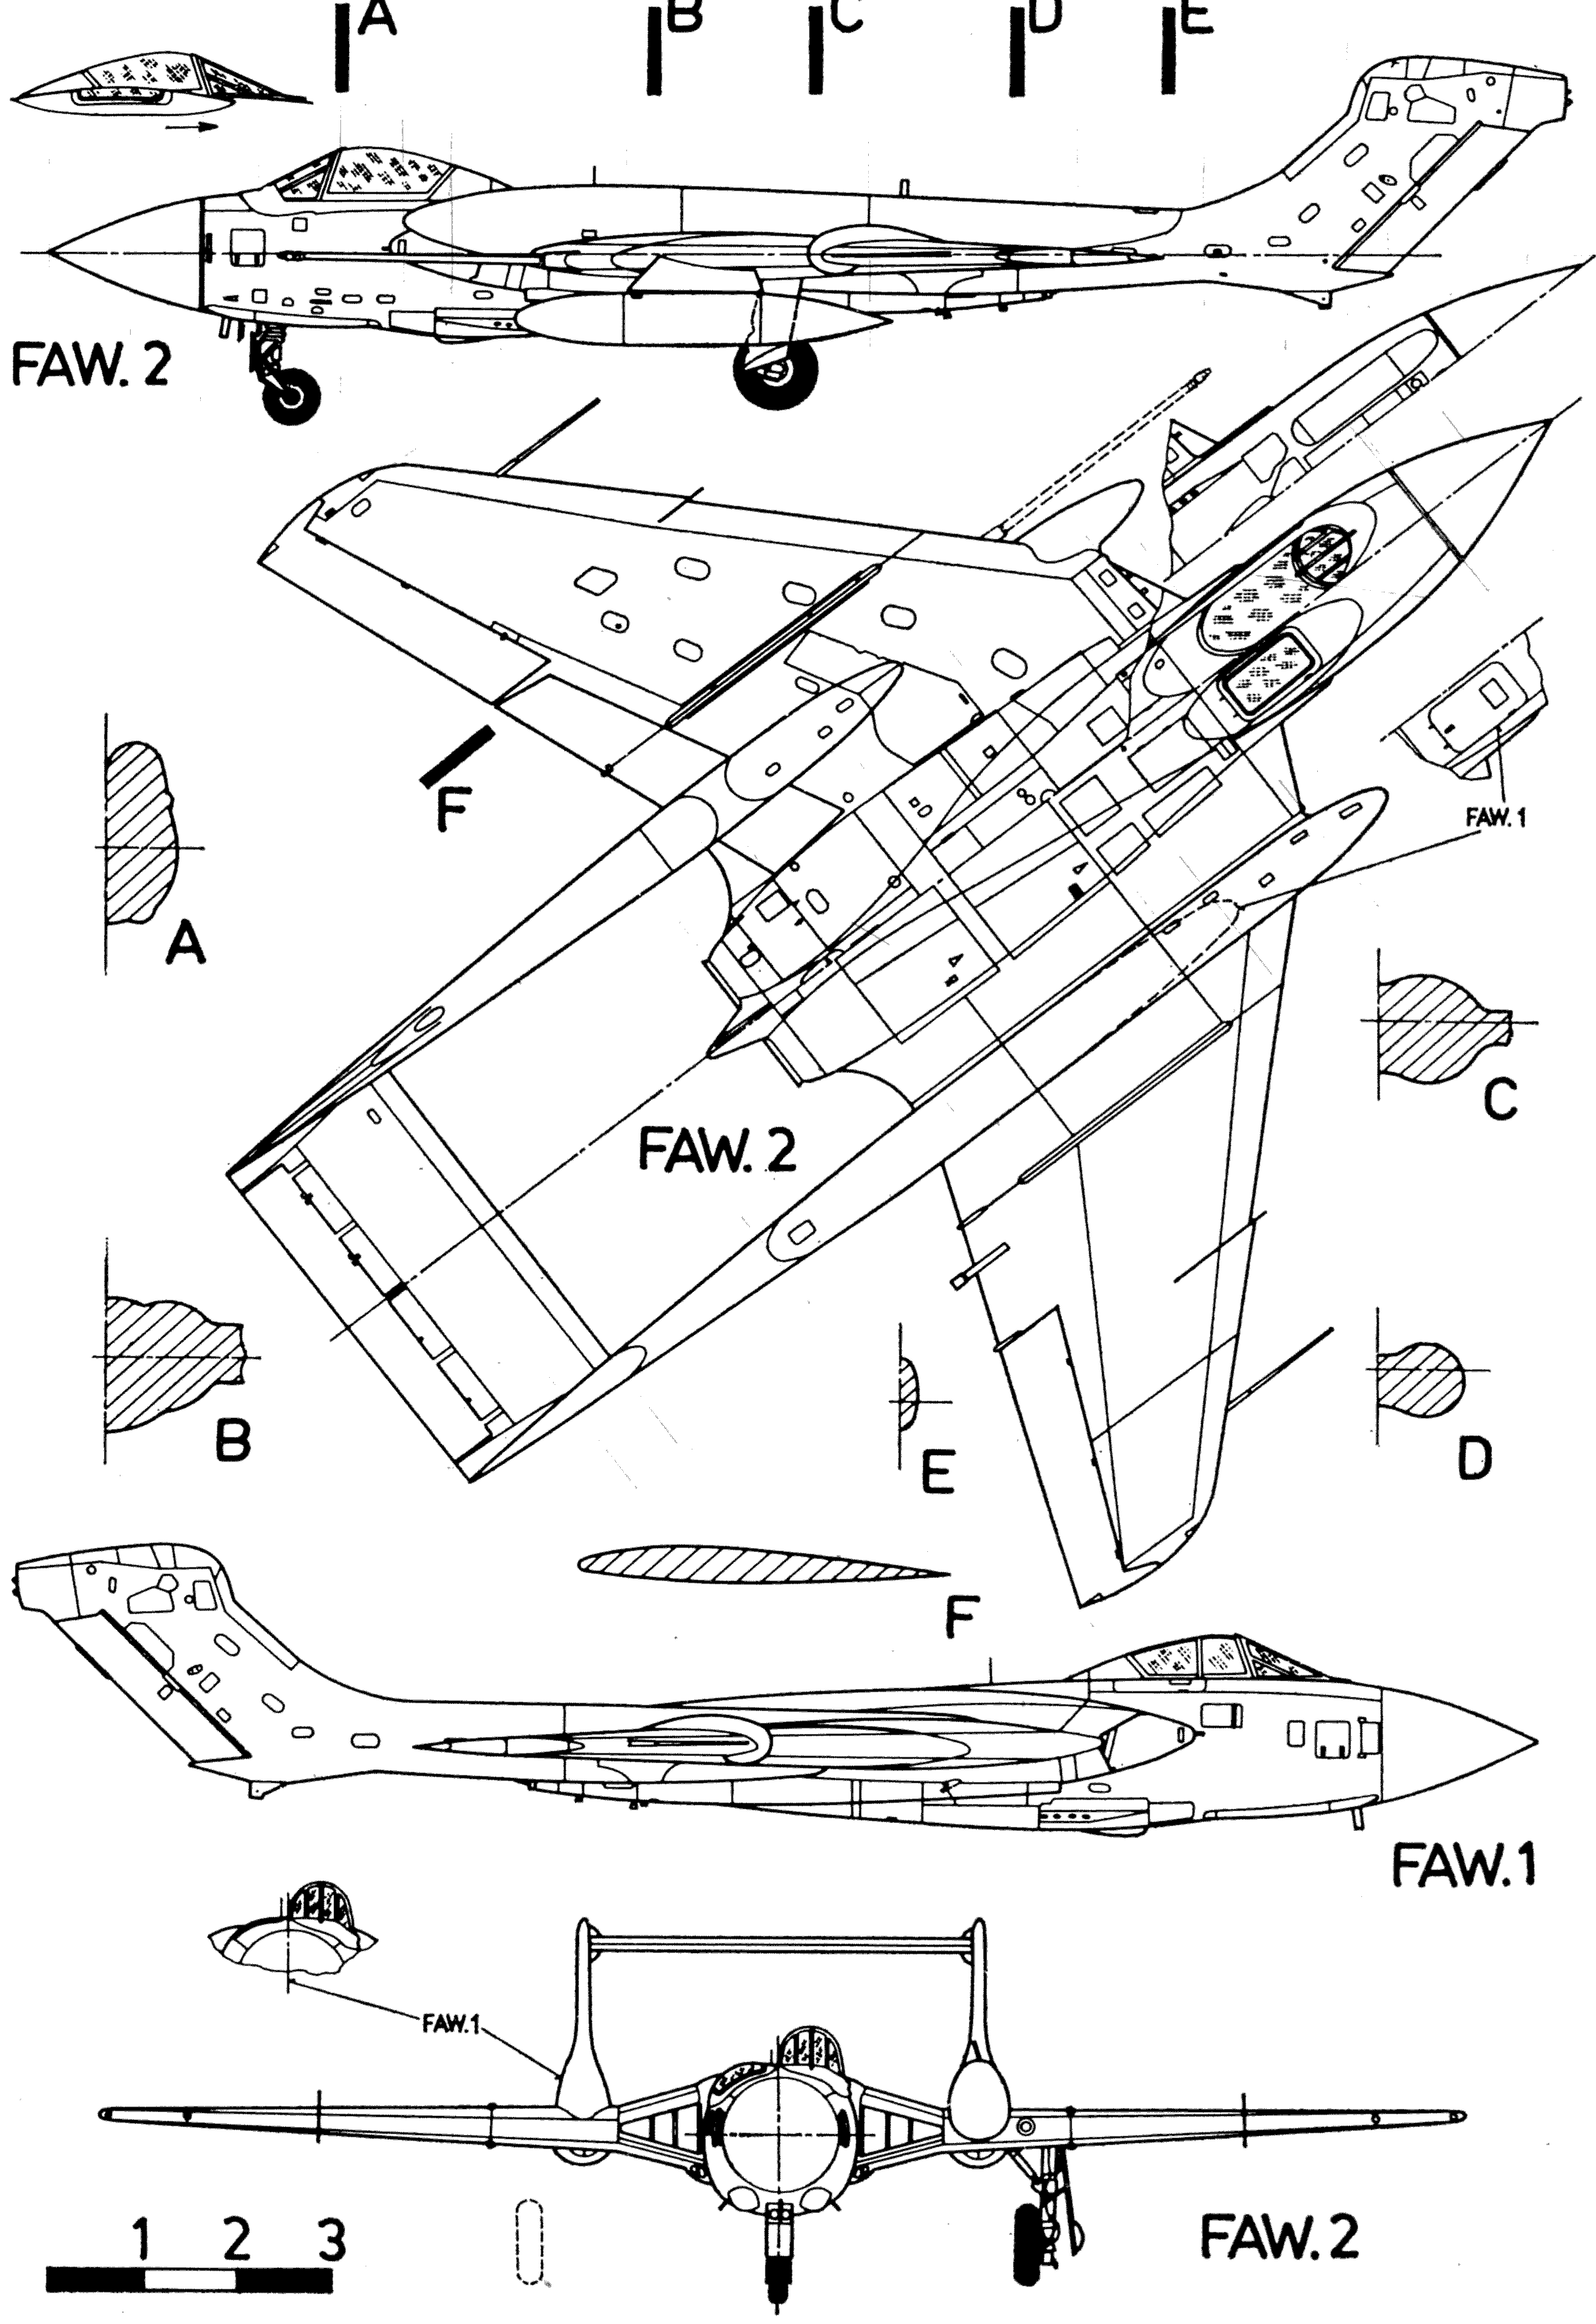 DH.110 Sea Vixen blueprint